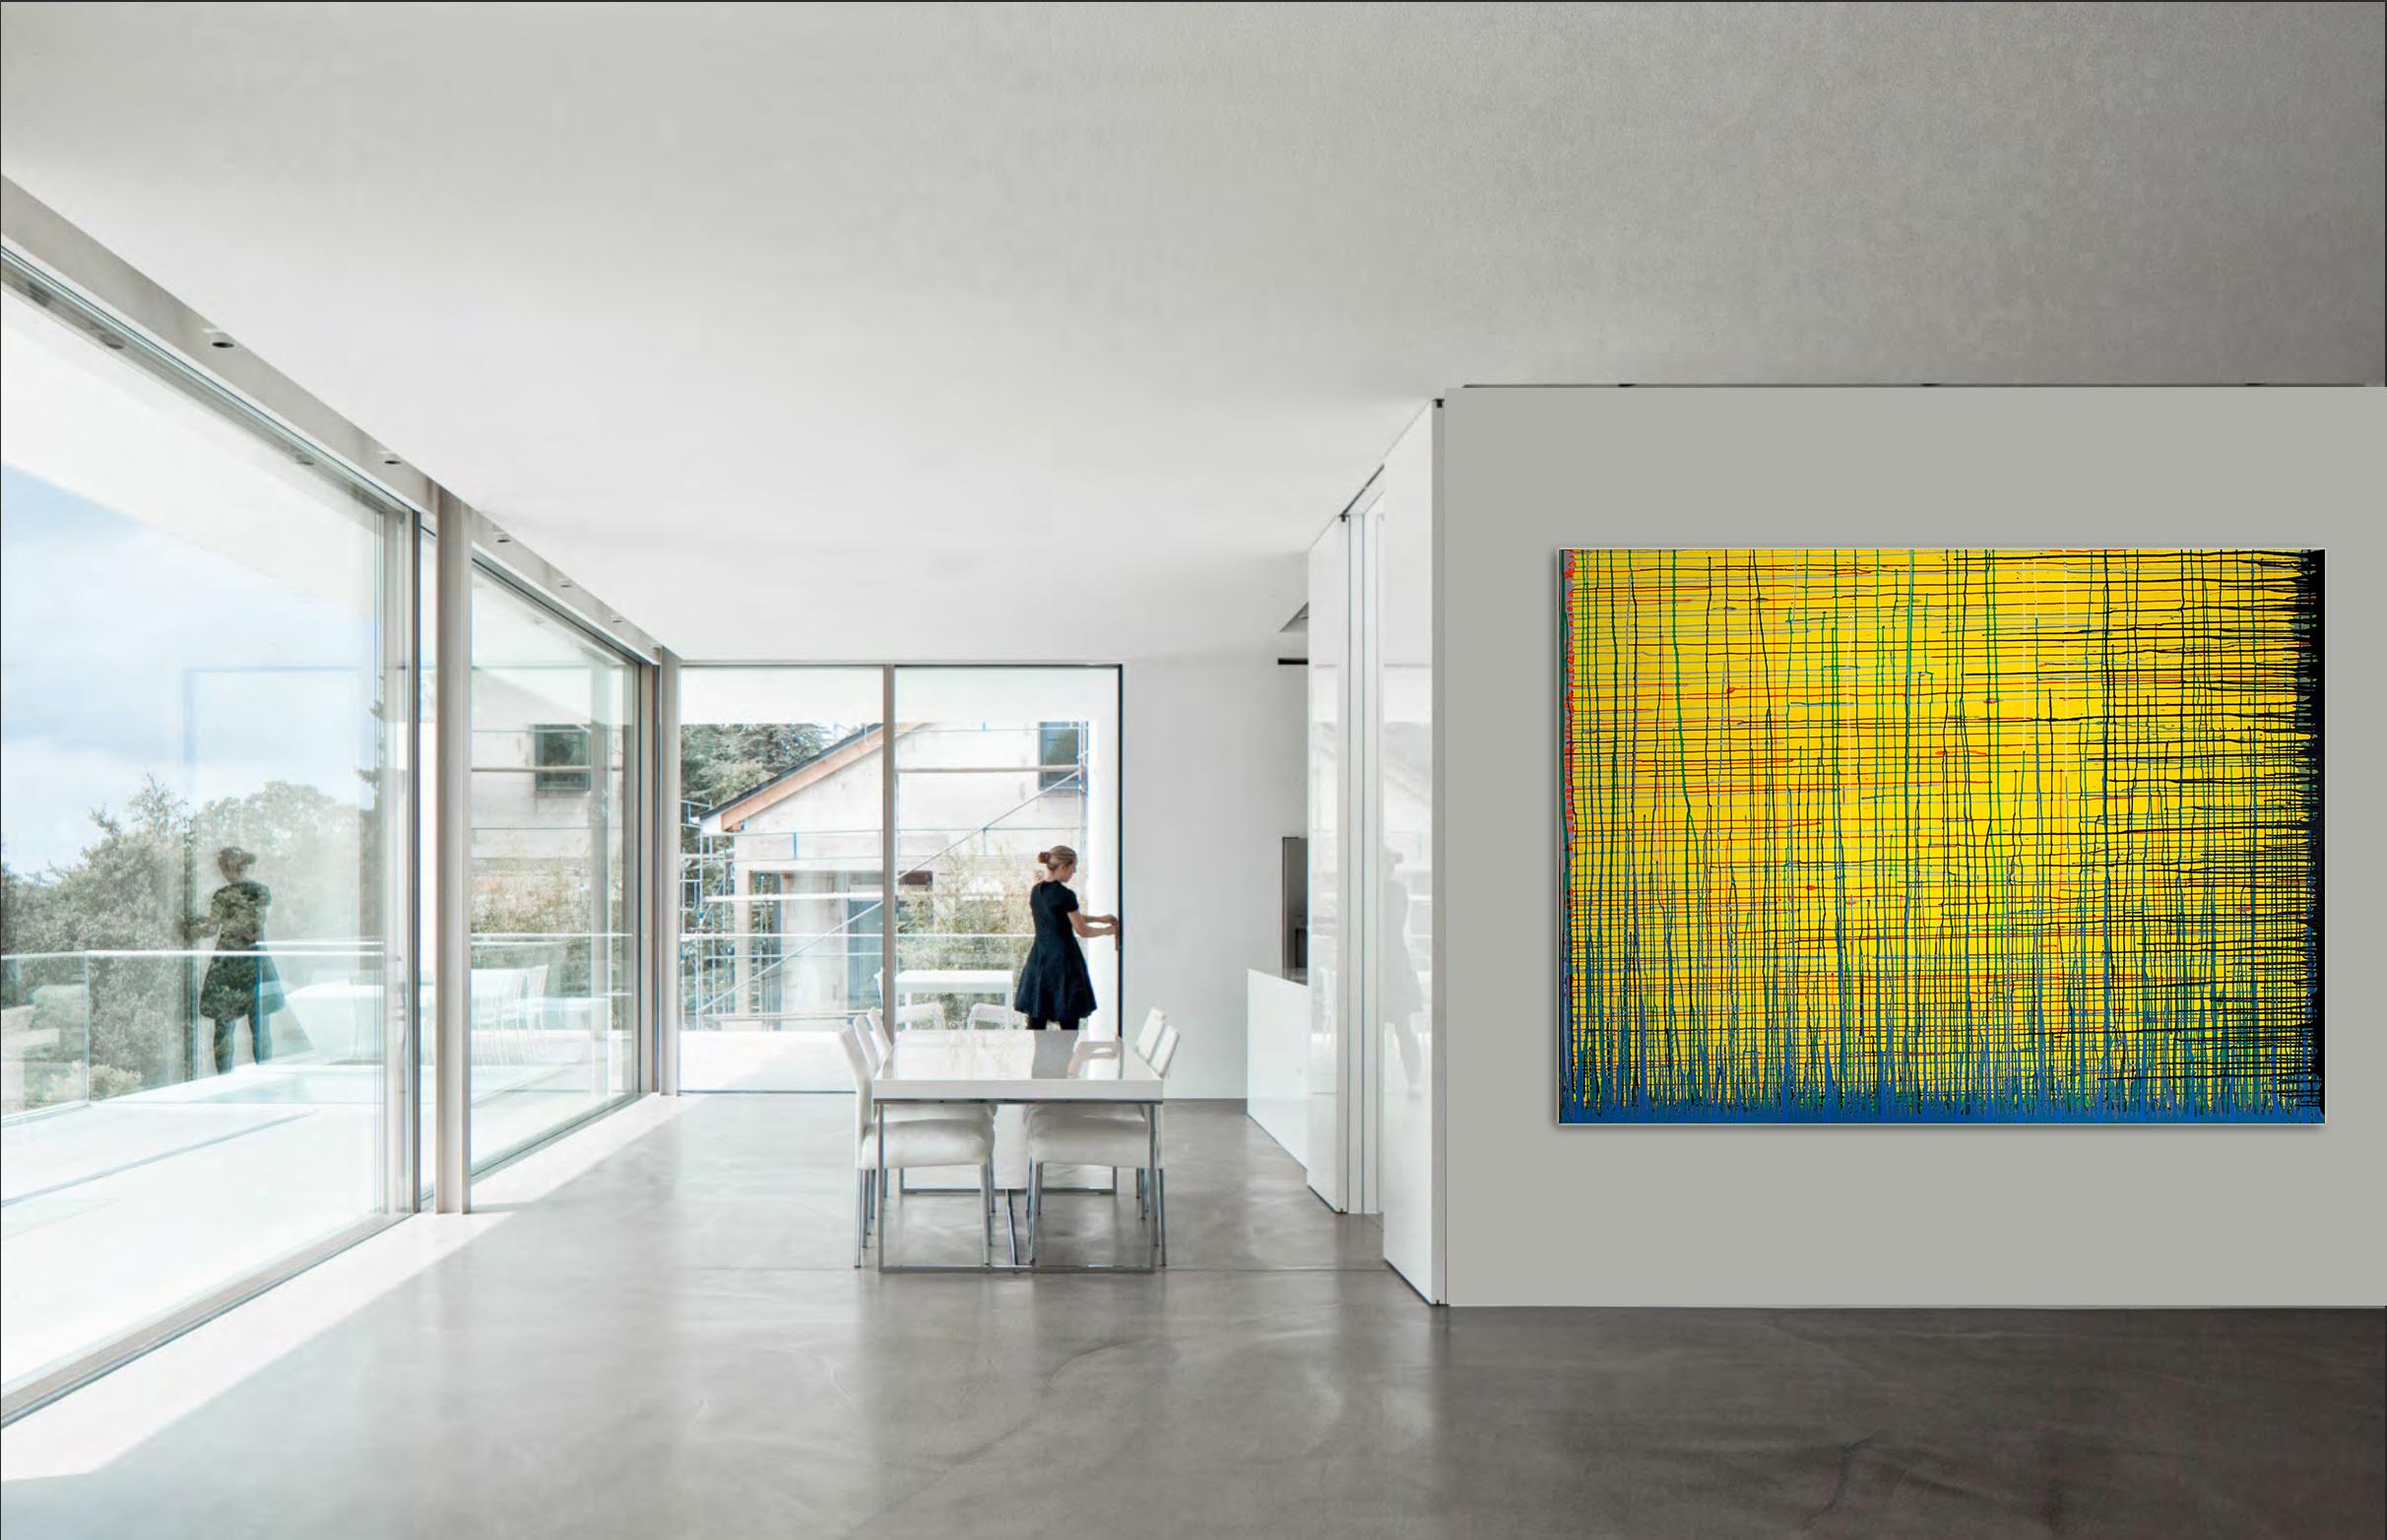 Flow Number1 de Detlef Aderhold - Grande peinture abstraite énergétique contemporaine énergique - Painting de Detlef E. Aderhold